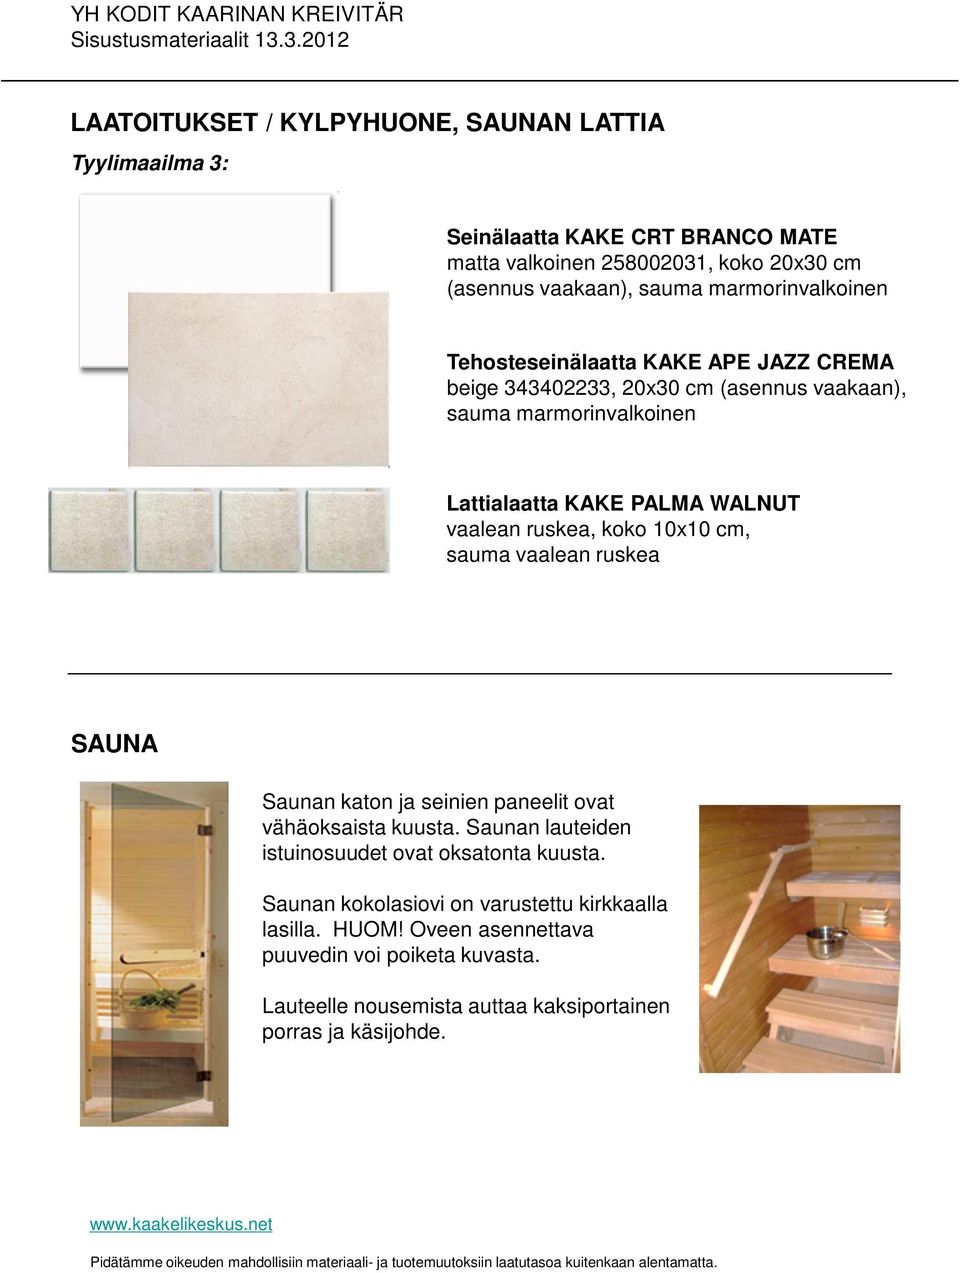 ruskea, koko 10x10 cm, sauma vaalean ruskea SAUNA Saunan katon ja seinien paneelit ovat vähäoksaista kuusta. Saunan lauteiden istuinosuudet ovat oksatonta kuusta.